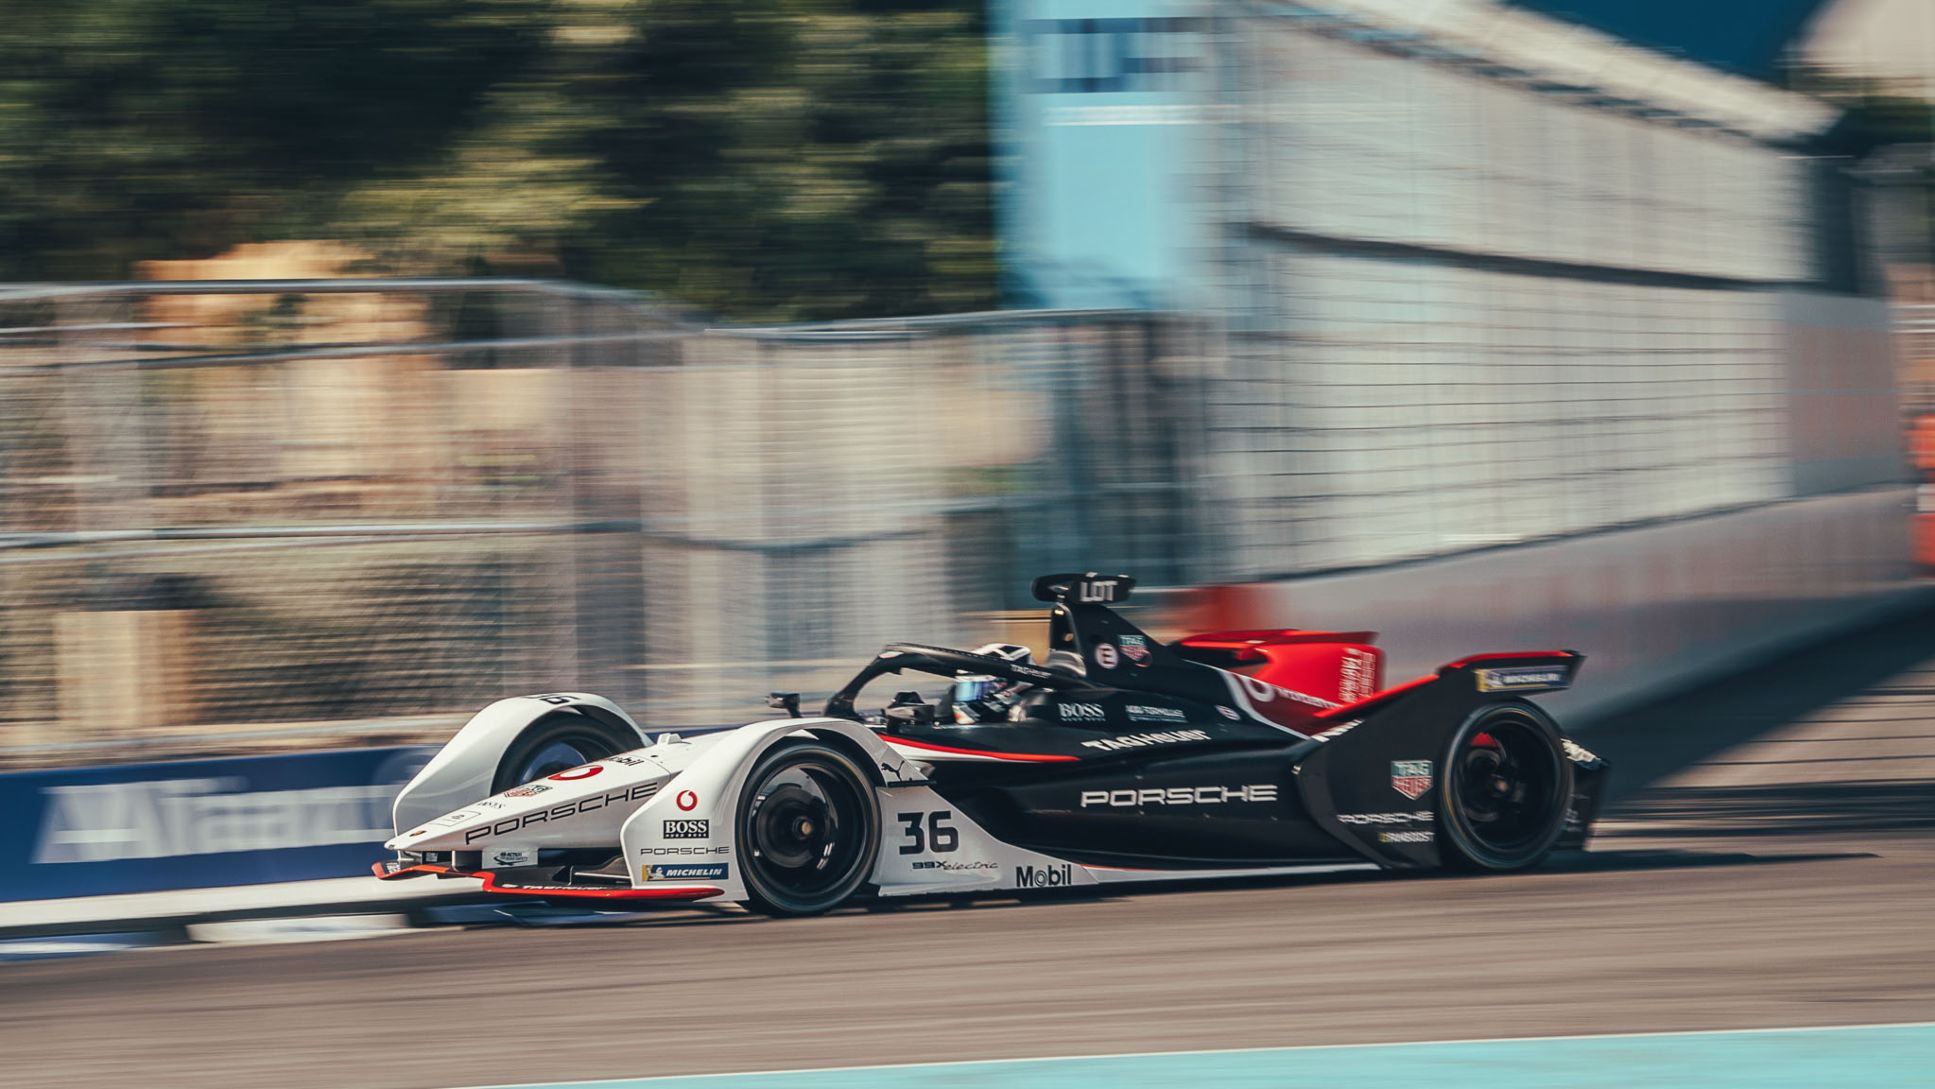 99X Electric, Diriyah E-Prix, primera prueba del Campeonato de Fórmula E ABB FIA 2019/2020, 2019, Porsche AG